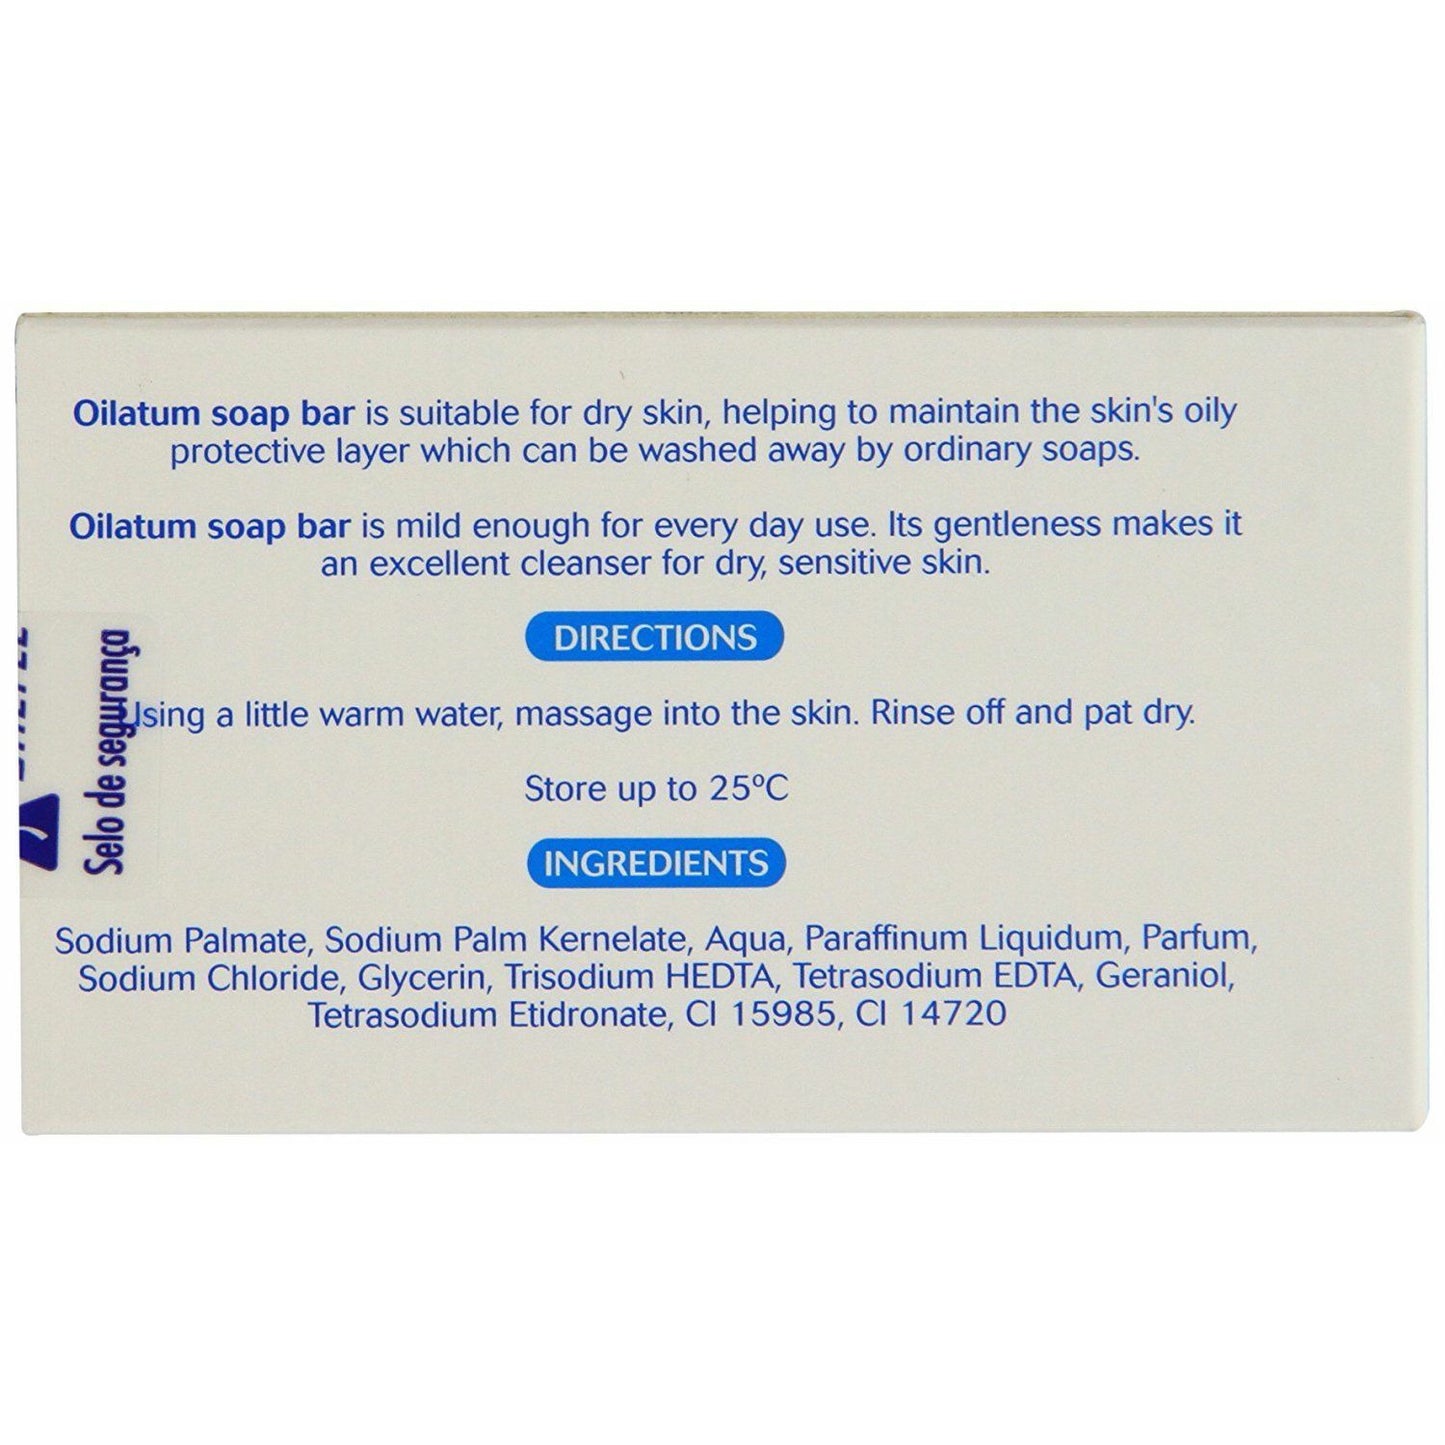 OILATUM SOAP BAR 100G FOR DRY SKIN (Pack of 12)